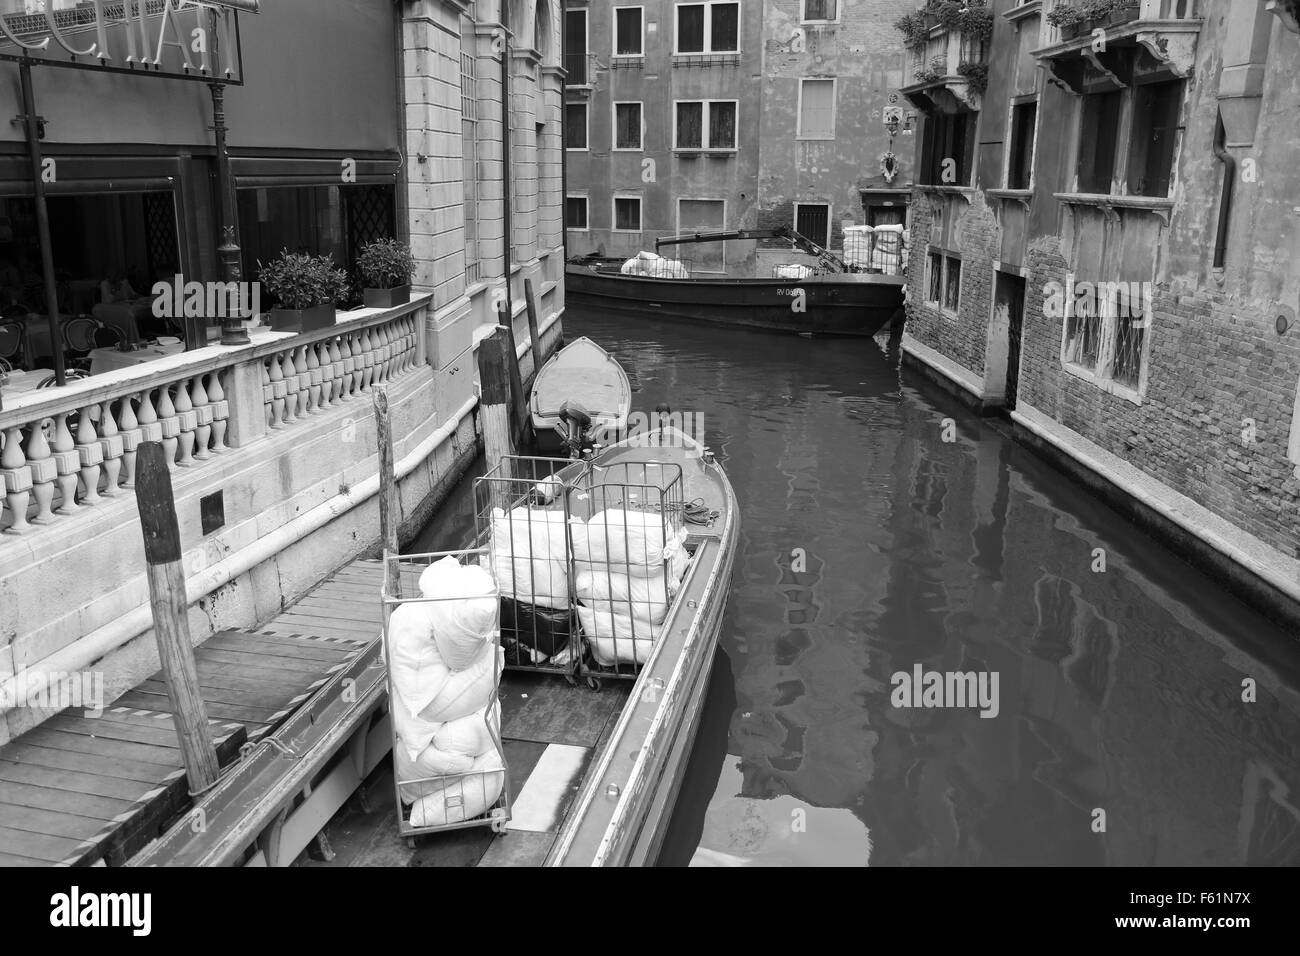 La mattina presto a Venezia, barche la raccolta e la consegna servizio lavanderia a lato canale alberghi. 21 Settembre 2015 Foto Stock